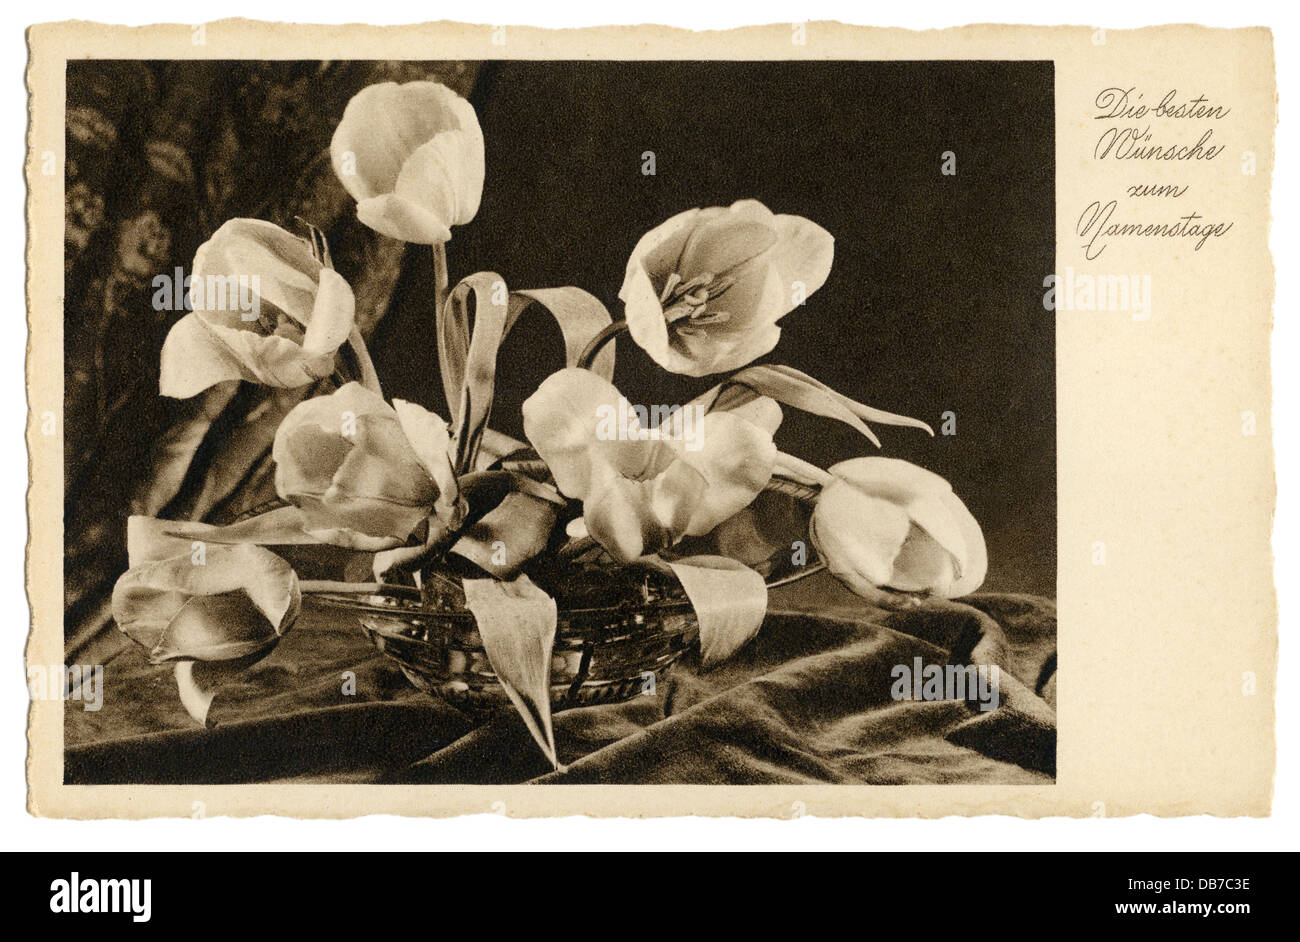 Festivités, cartes de voeux nom jour, 'Die besten Wünsche zum Namenstage' (meilleurs voeux pour votre nom jour), tulipes dans le bol, carte postale, Allemagne, années 1930, droits additionnels-Clearences-non disponible Banque D'Images